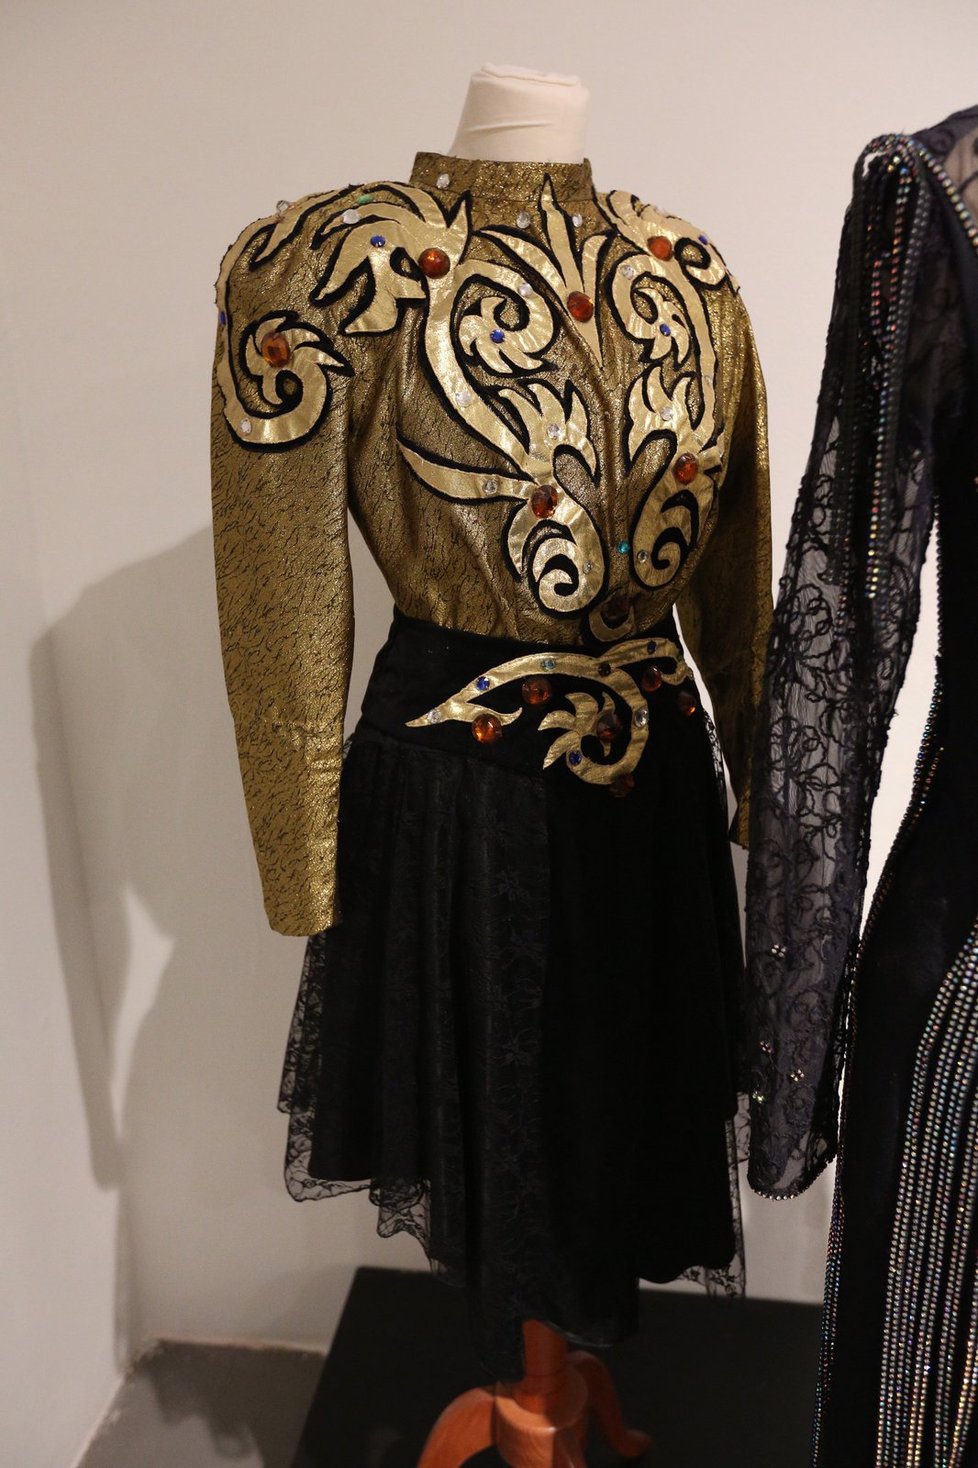 Šaty ze 70. a 80. let, které jsou k vidění na retro výstavě v Tančícím domě.